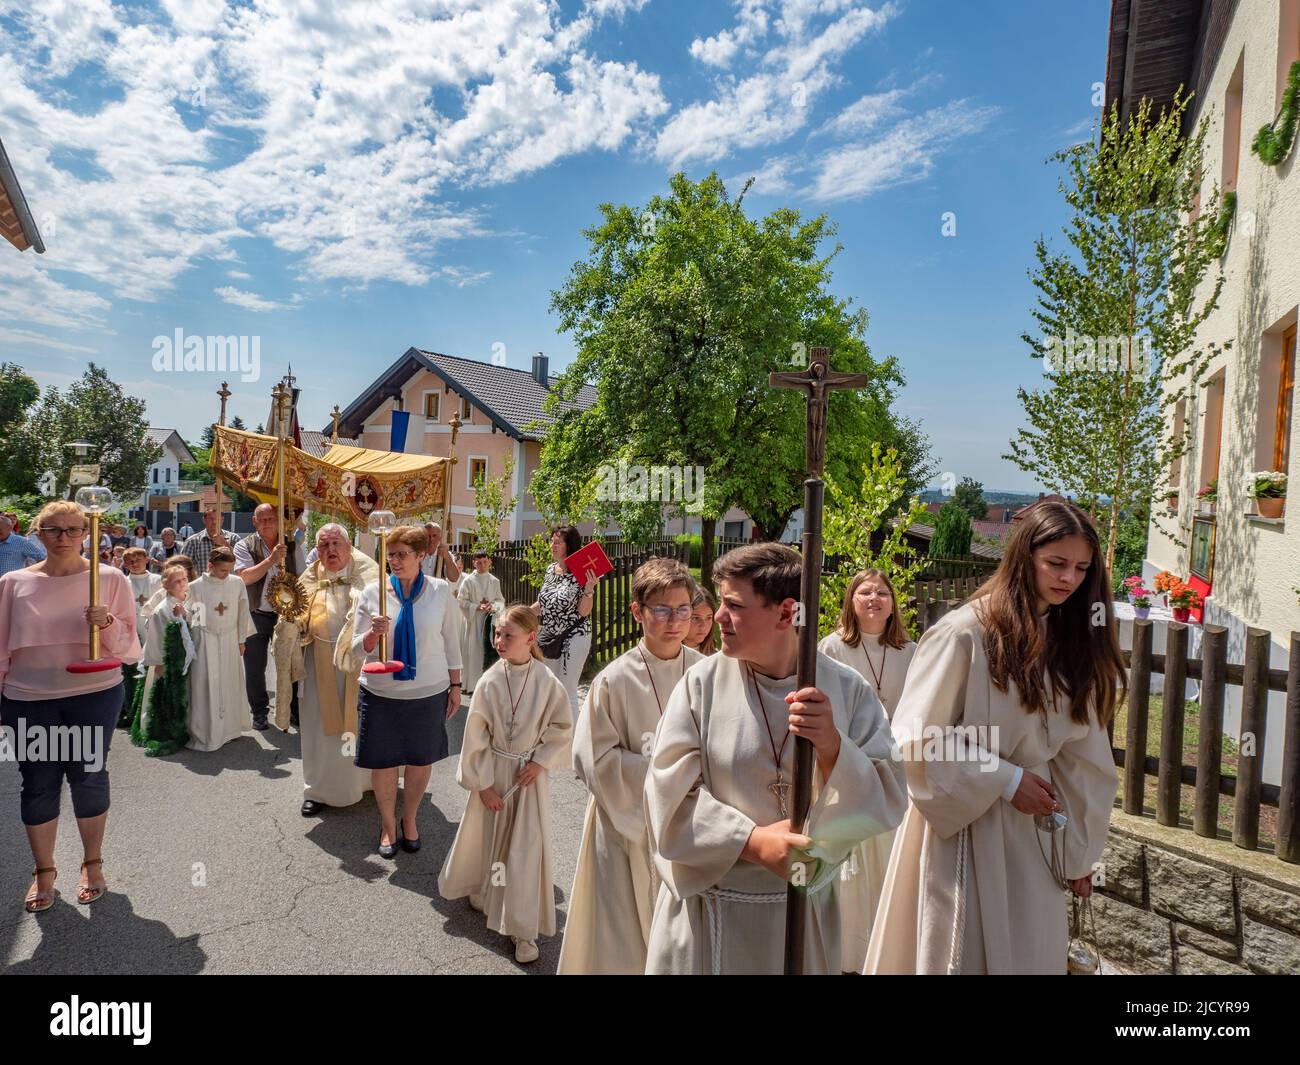 Die Teilnehmer der Prozession tragen Kreuze und einen Baldachin über dem Priester. Katholiken des Dorfes Garham machen eine Prozession zu Ehren der Feier des Leibes und Blutes Jesu Christi. Stockfoto